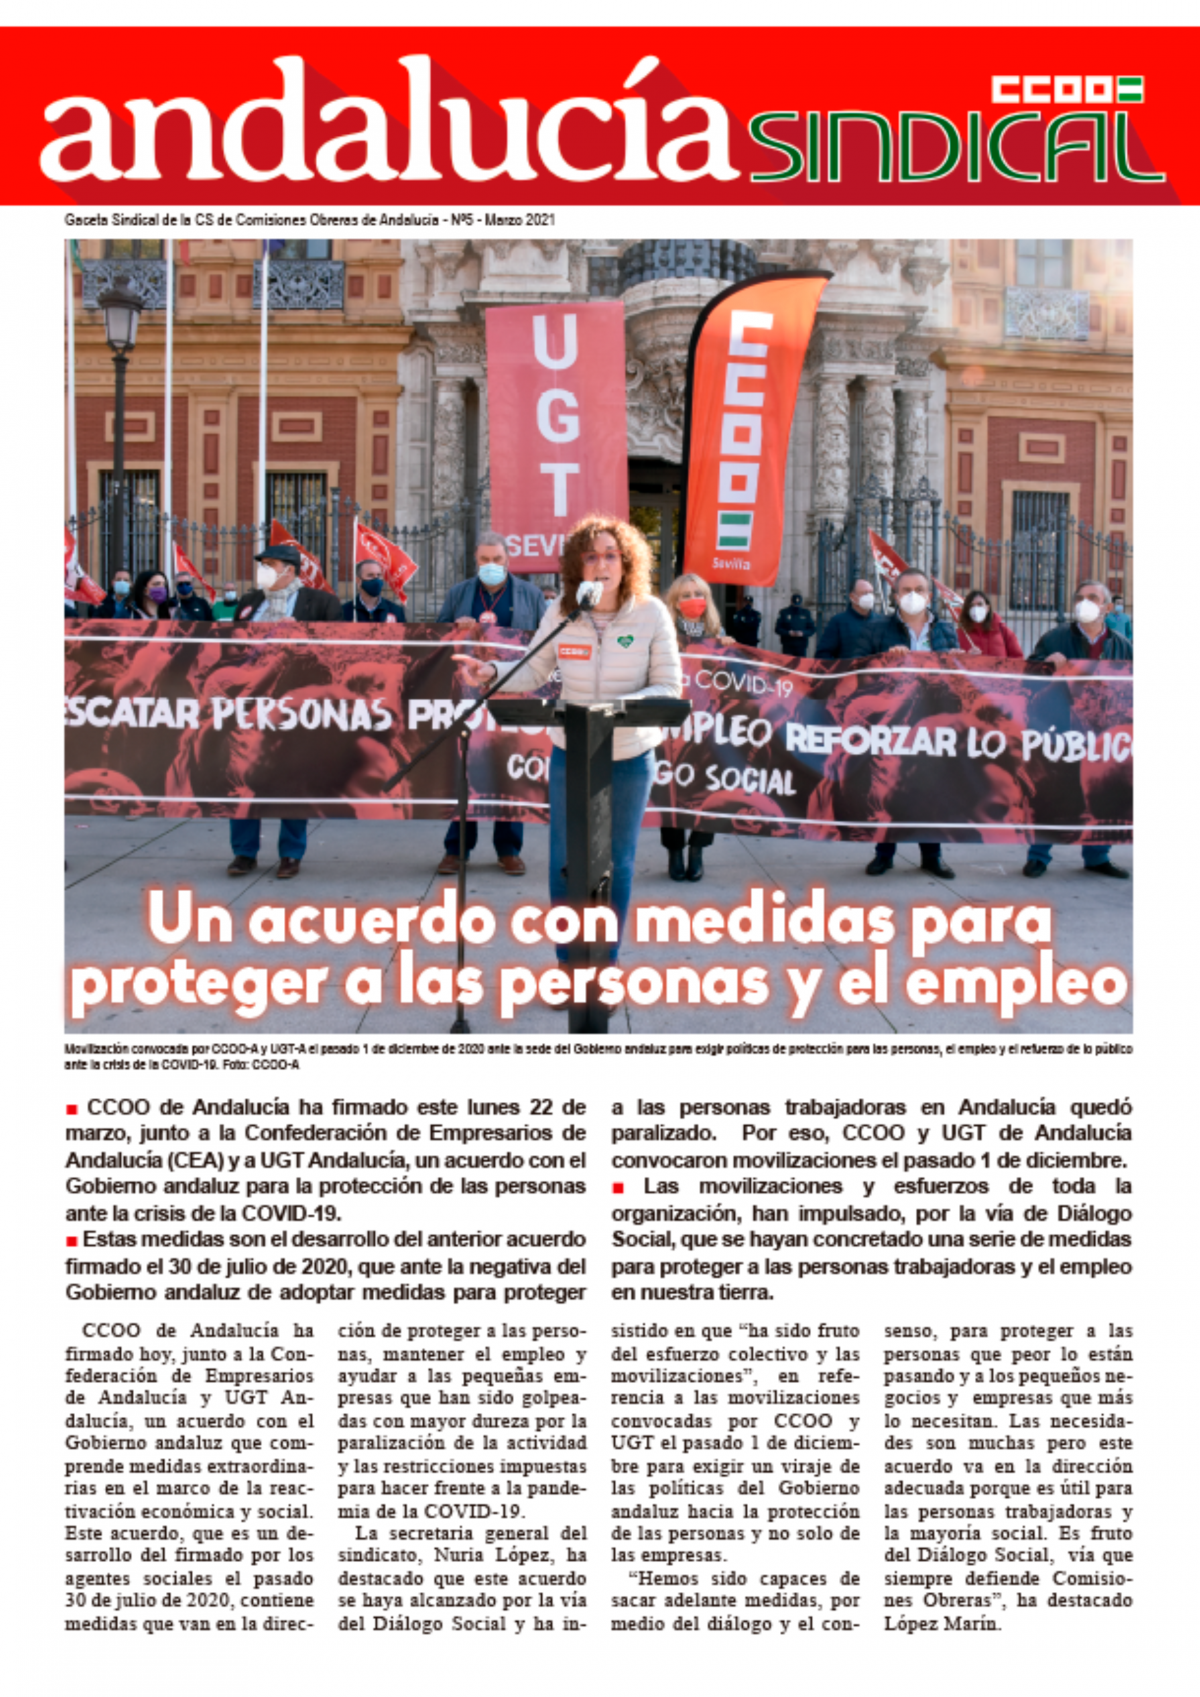 Andalucía Sindical: Un acuerdo con medidas para proteger a las personas y el empleo